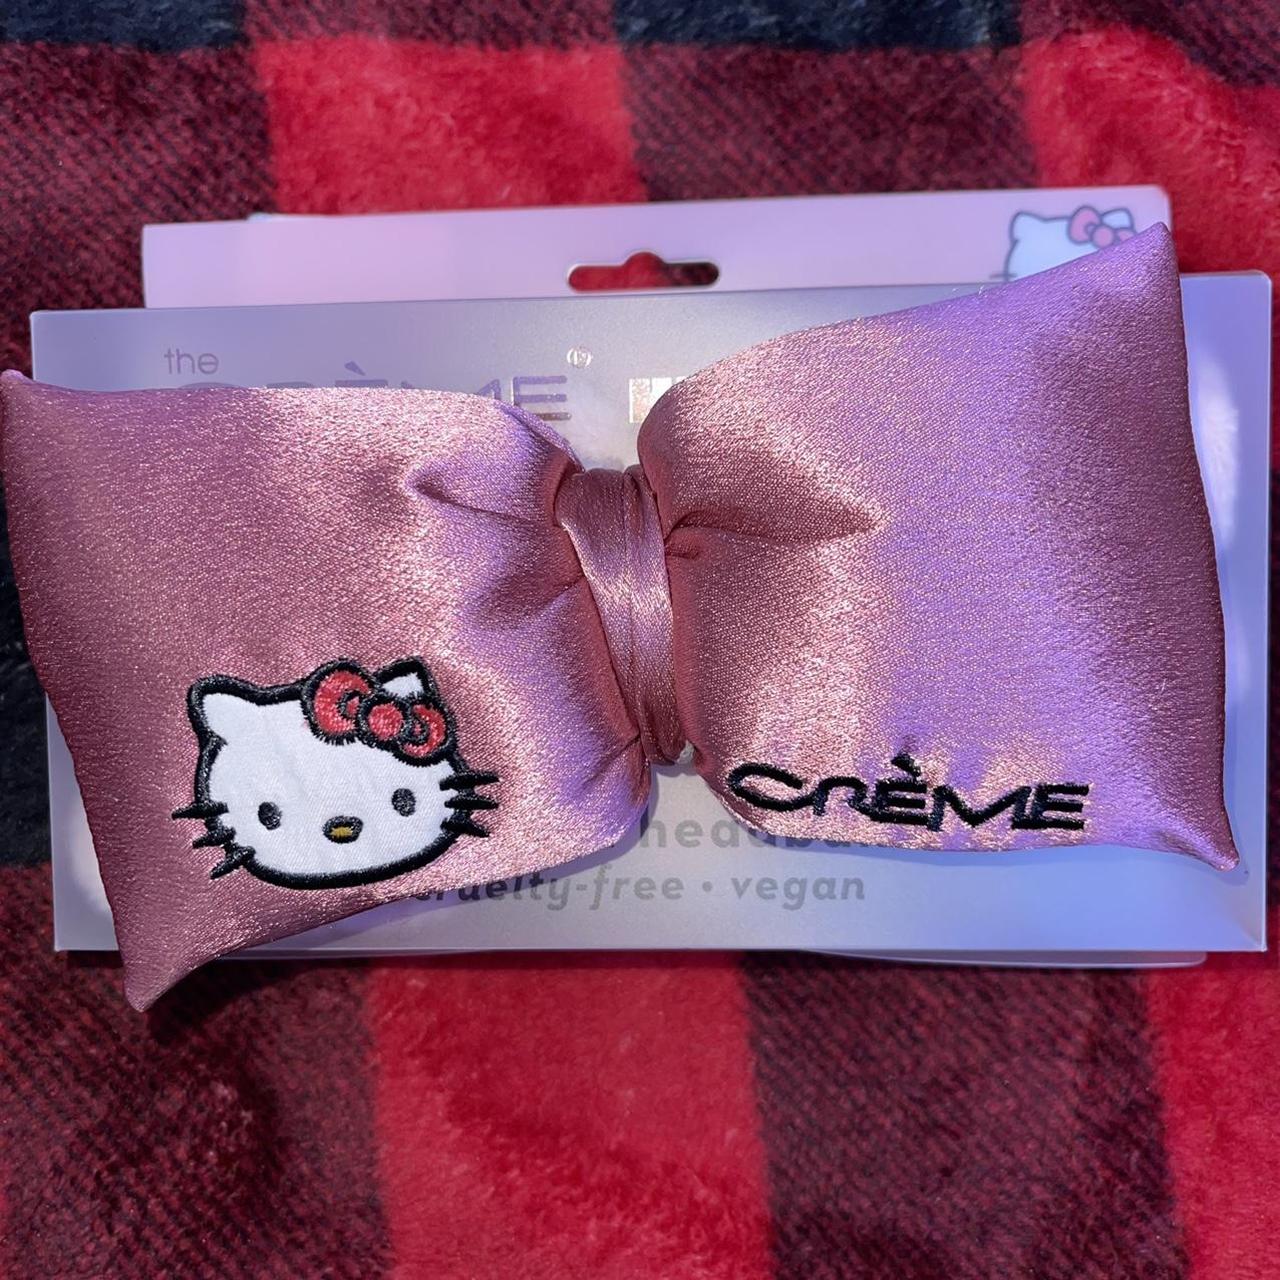 Product Image 1 - Hello Kitty Spa Headband

hello kitty